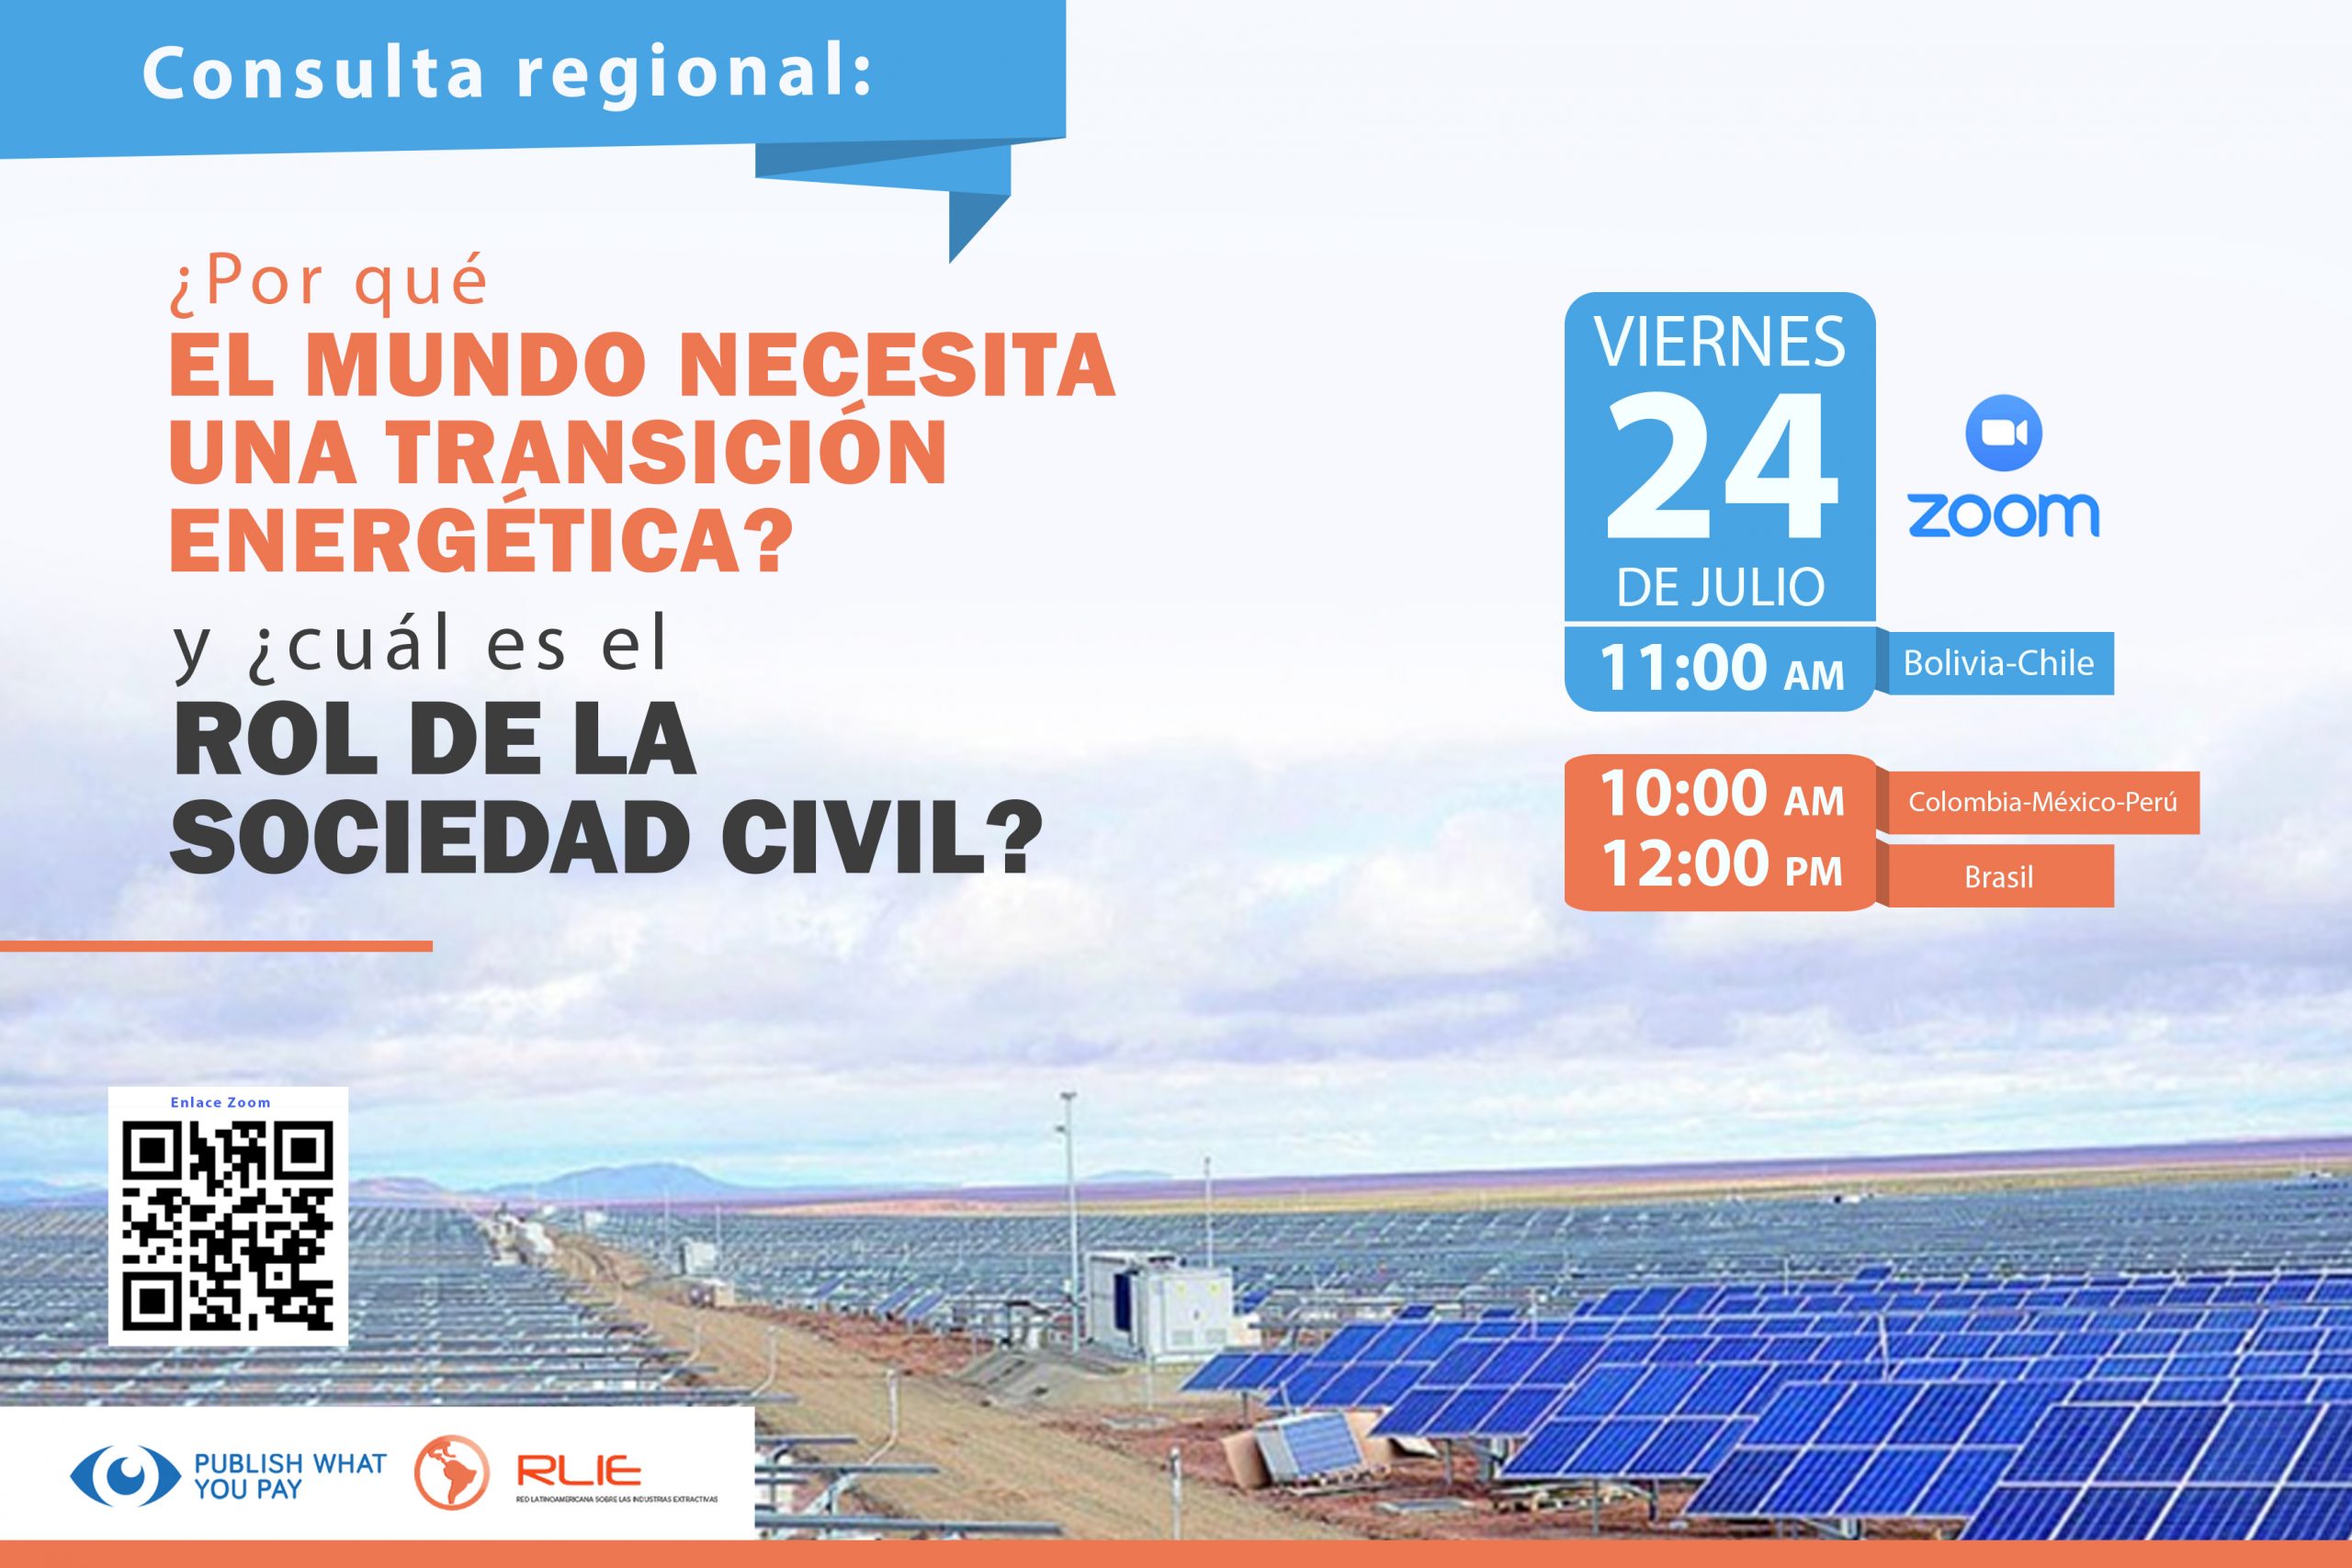 Consulta regional: ¿Por qué el mundo necesita una transición energética? Y ¿cuál es el rol de la sociedad civil?